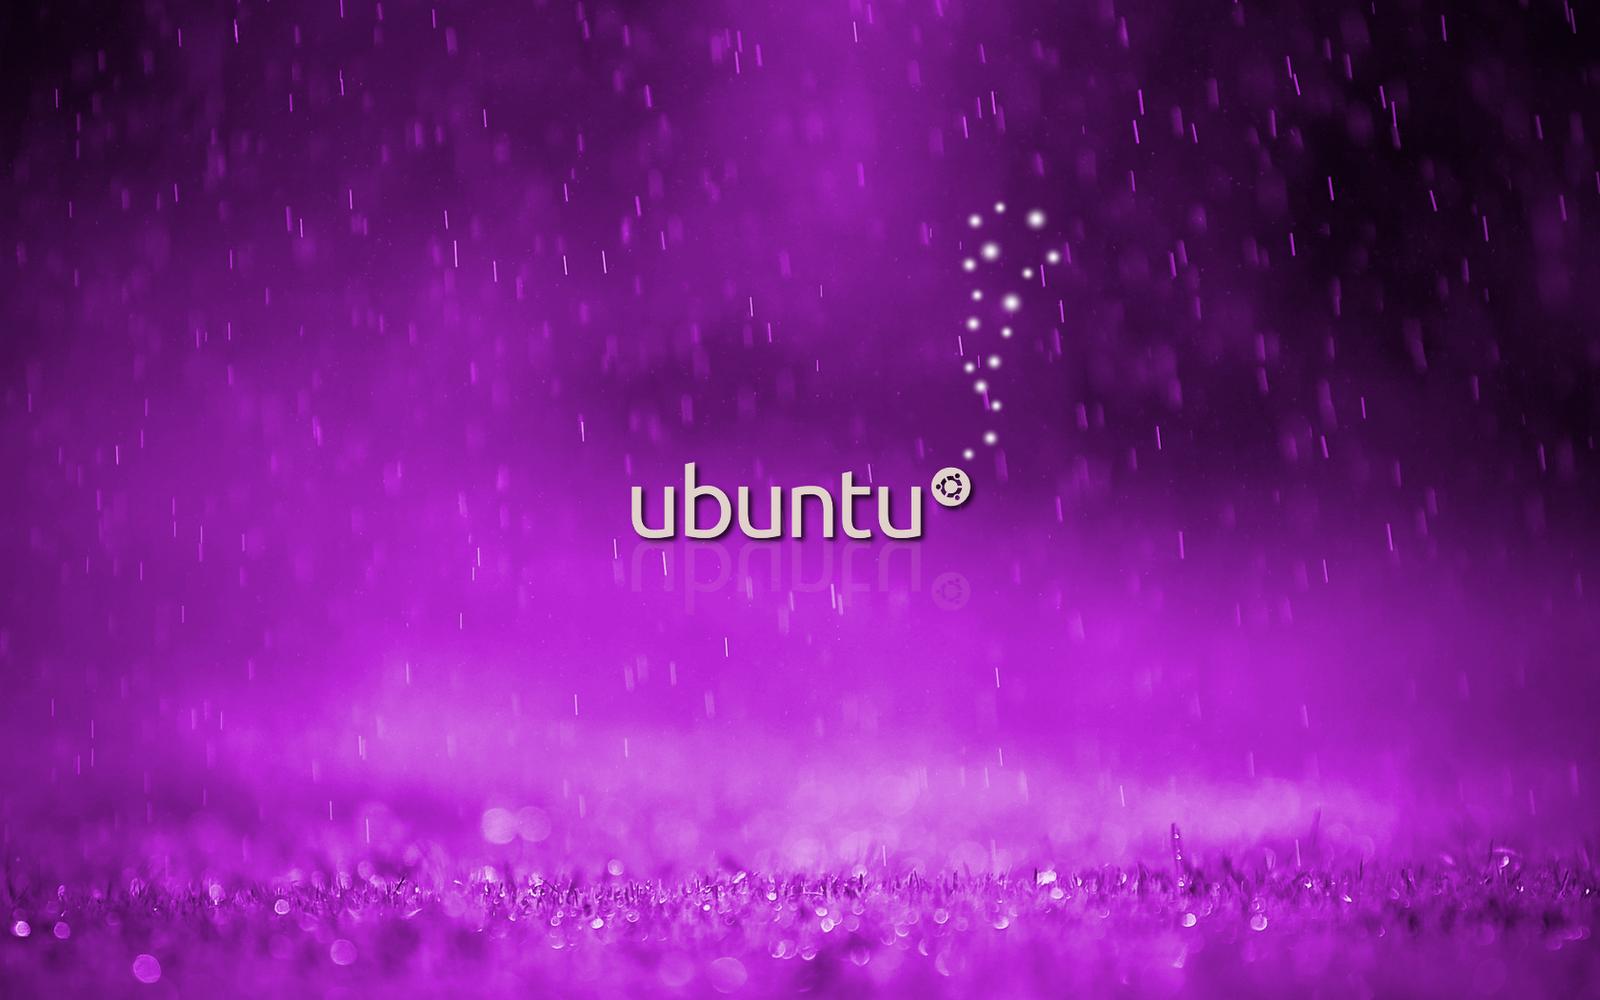 Cool Ubuntu Rain Wallpaper